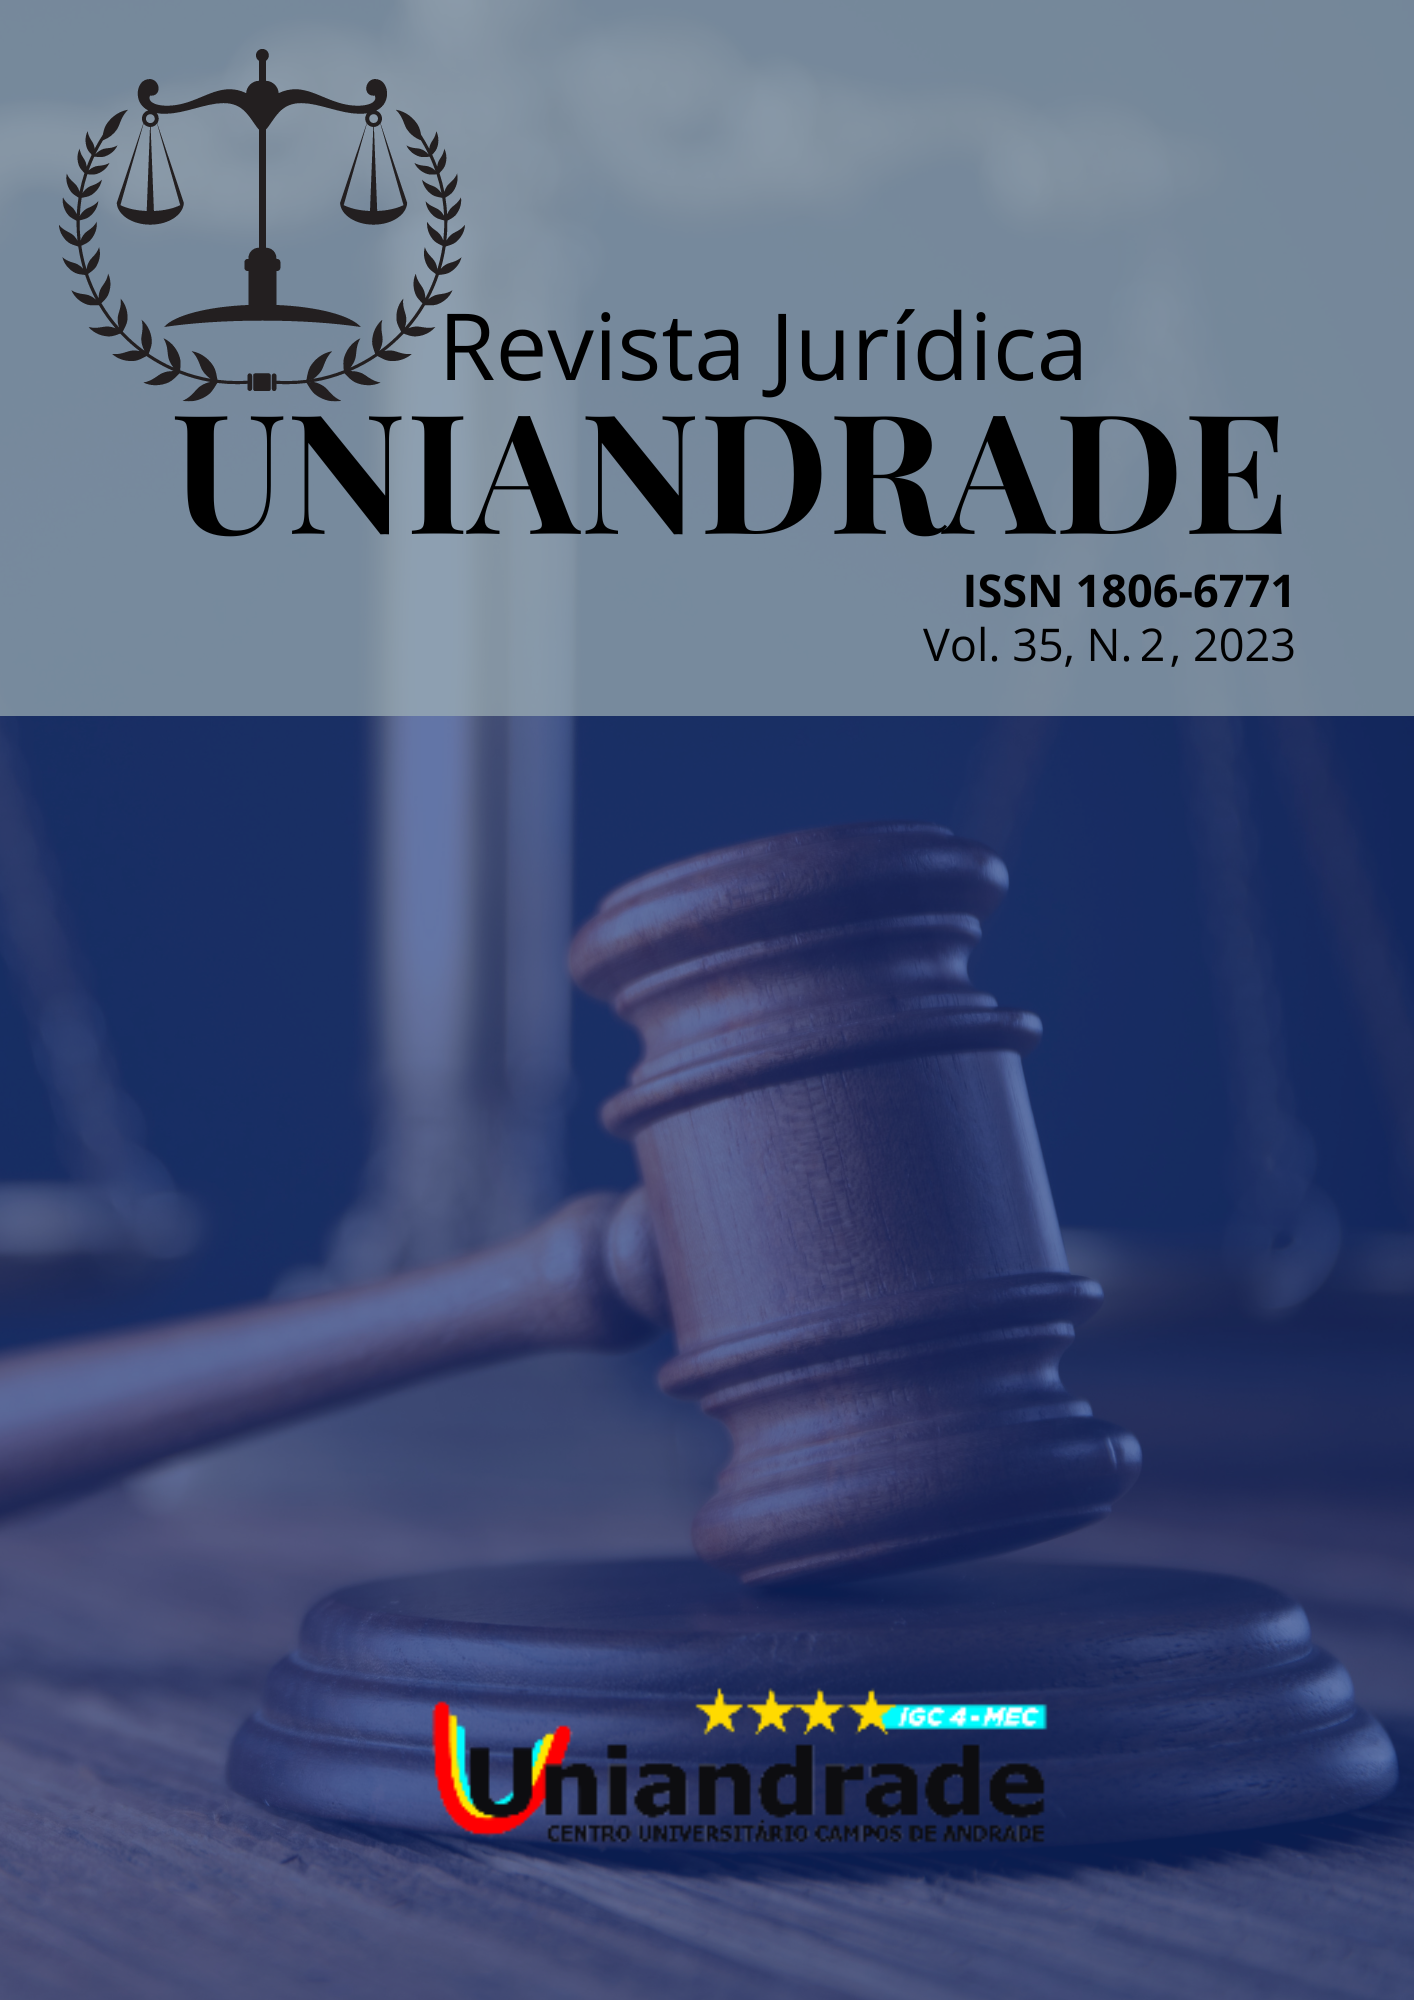 					Visualizar v. 35 n. 2 (2023): Revista Jurídica Uniandrade
				